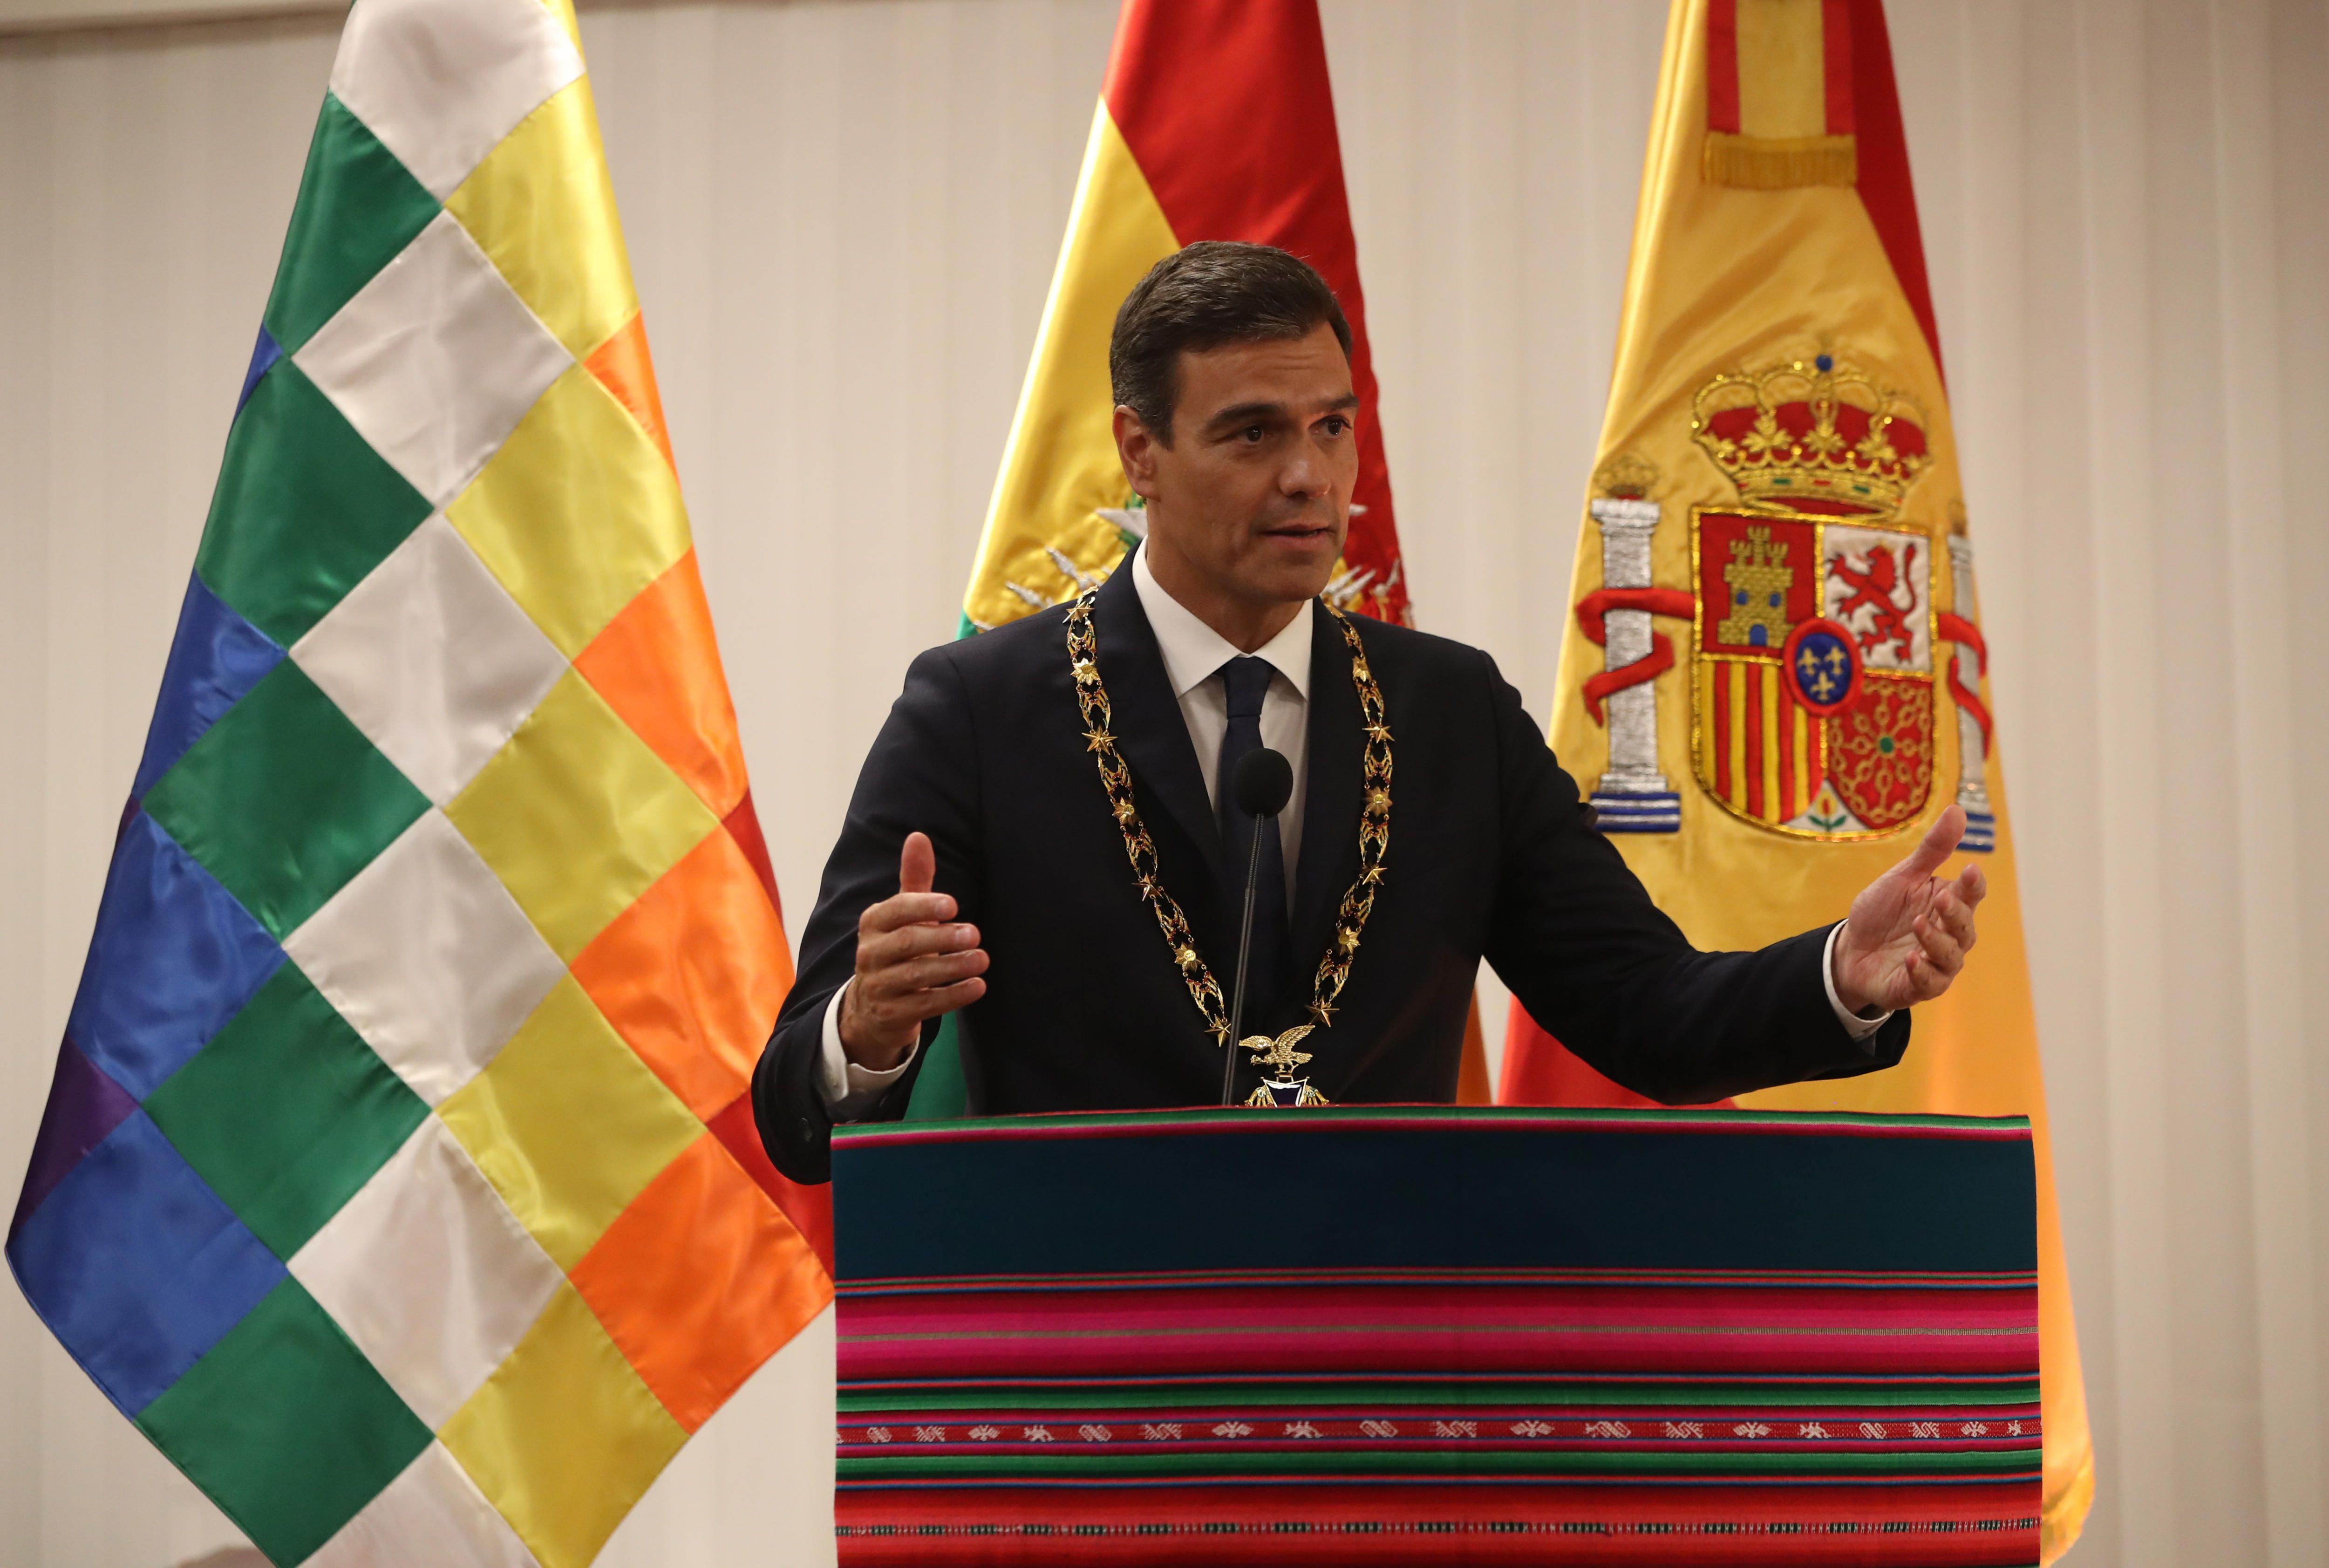 El presidente del Gobierno español, Pedro Sánchez, pronuncia unas palabras tras ser condecorado con el "Cóndor de los Andes" por el presidente de Bolivia, Evo Morales, hoy, martes 28 de agosto de 2018, en Santa Cruz (Bolivia). EFE